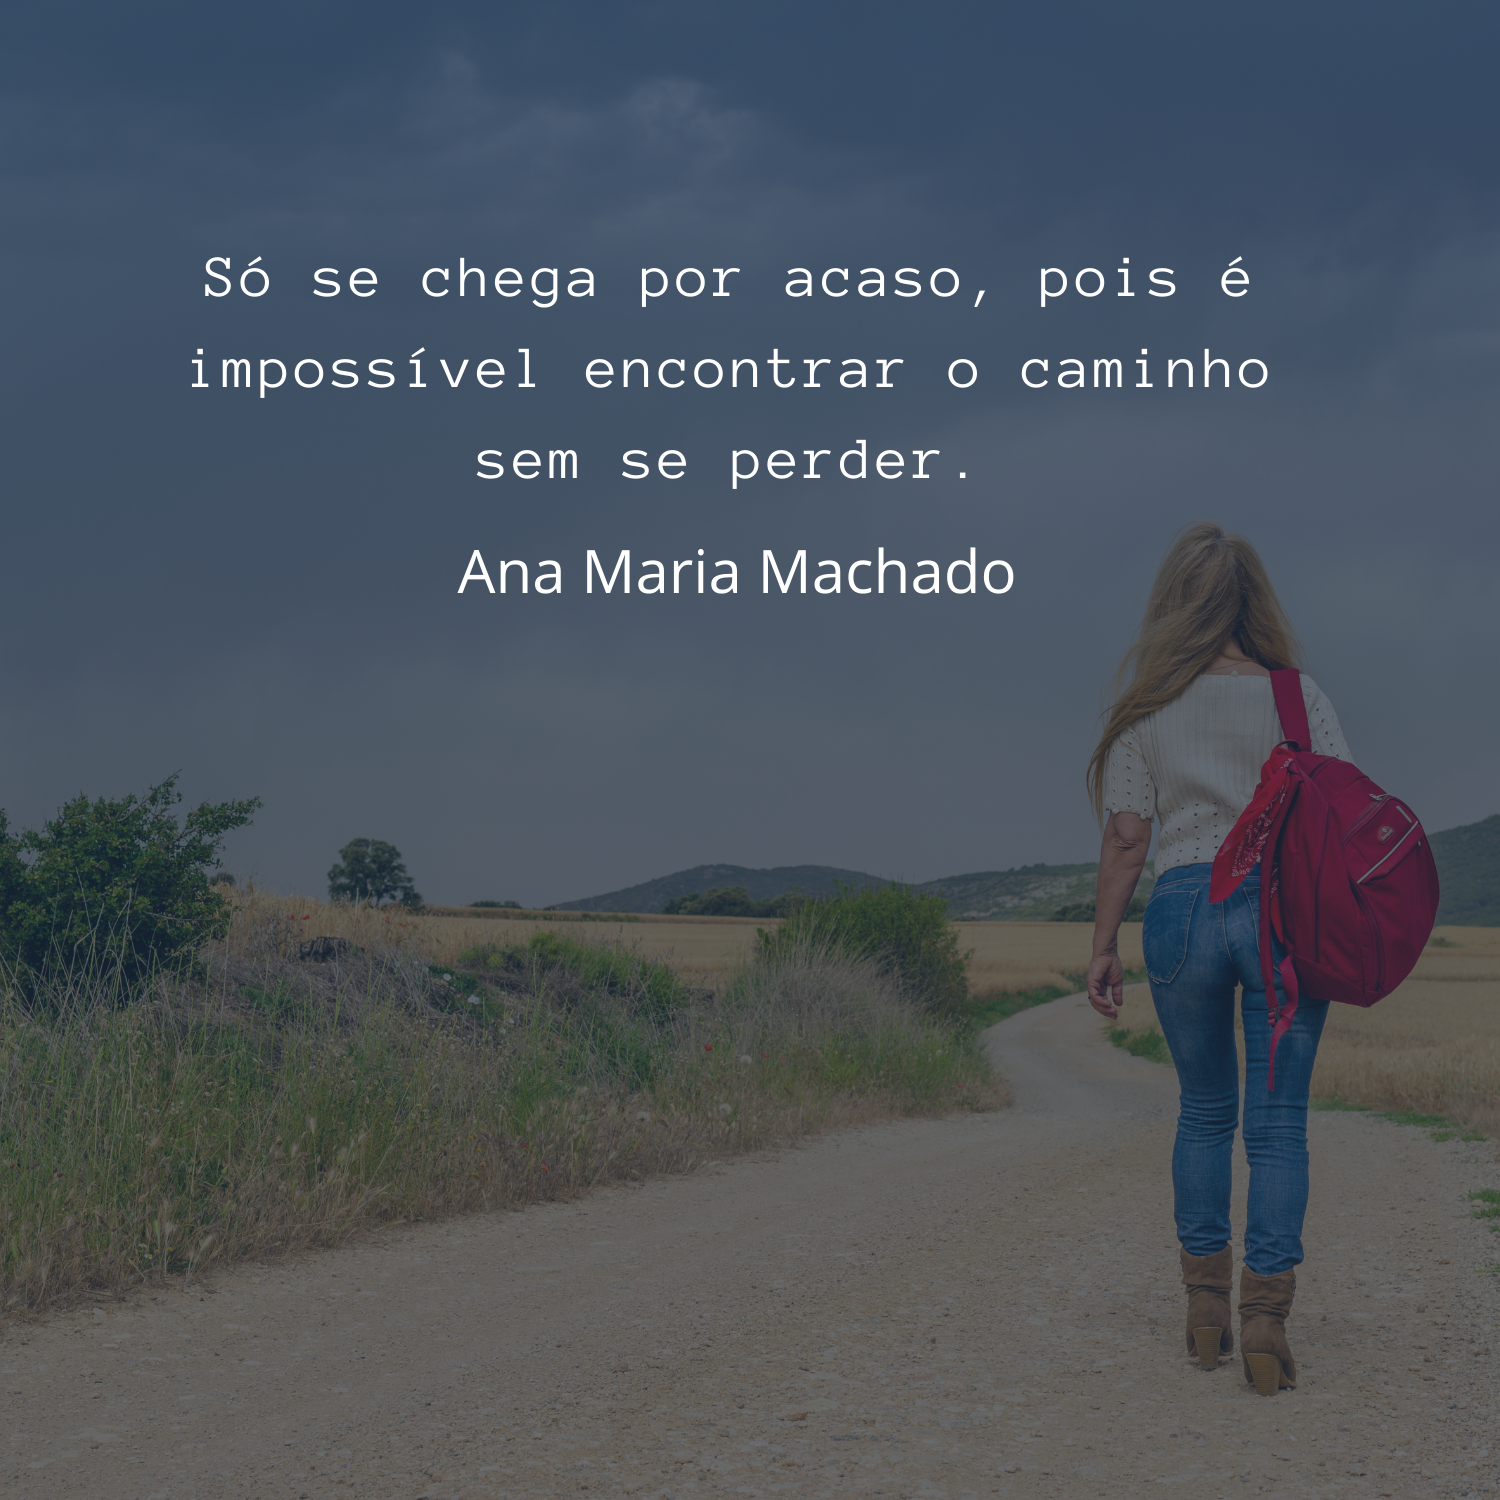 Frases Ana Maria Machado - Poesias Para Mensagens, Fotos e Status